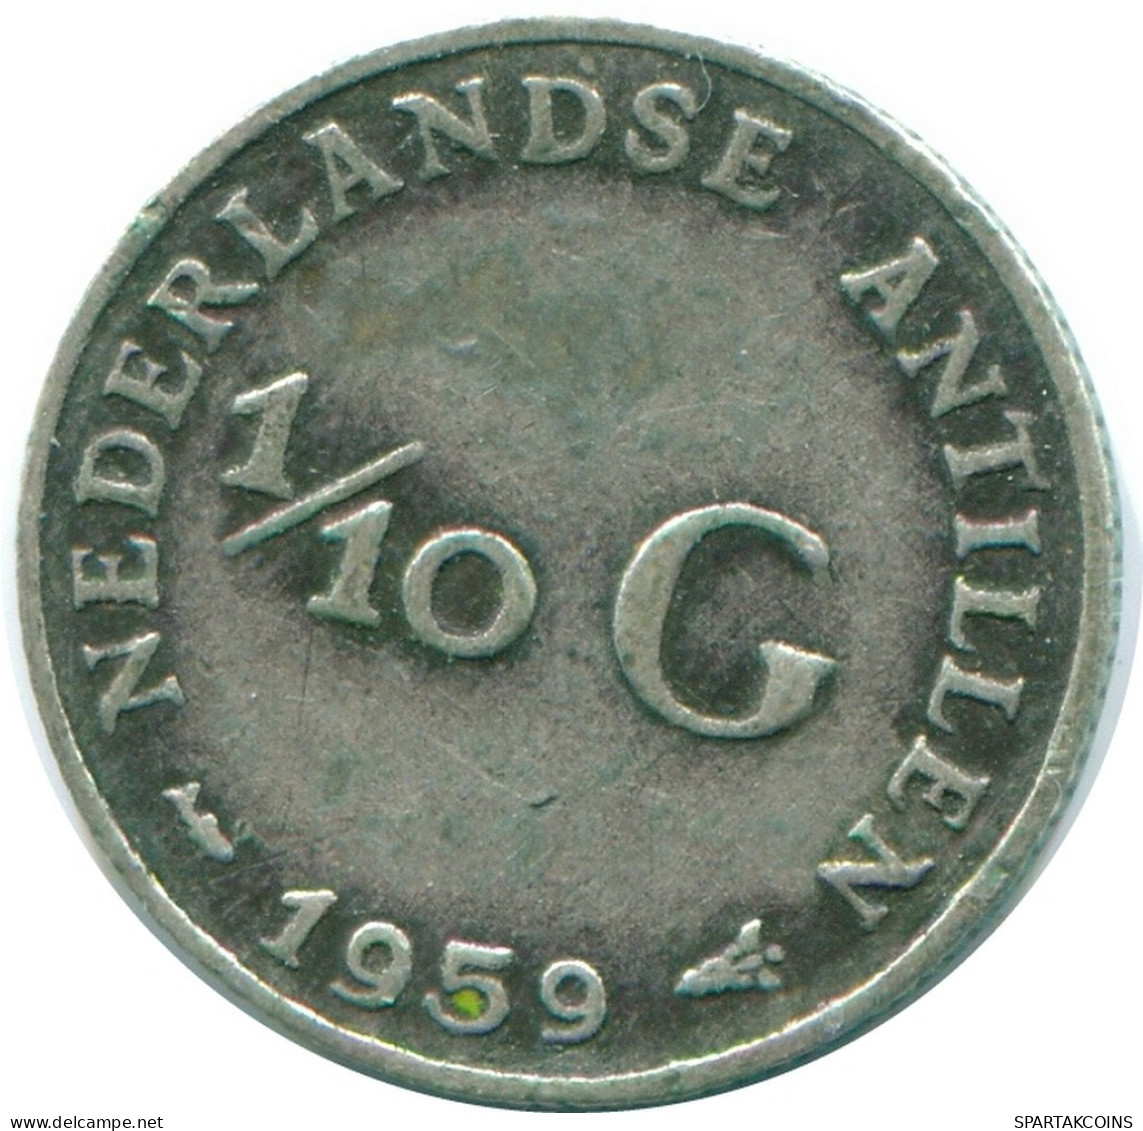 1/10 GULDEN 1959 NIEDERLÄNDISCHE ANTILLEN SILBER Koloniale Münze #NL12235.3.D.A - Niederländische Antillen